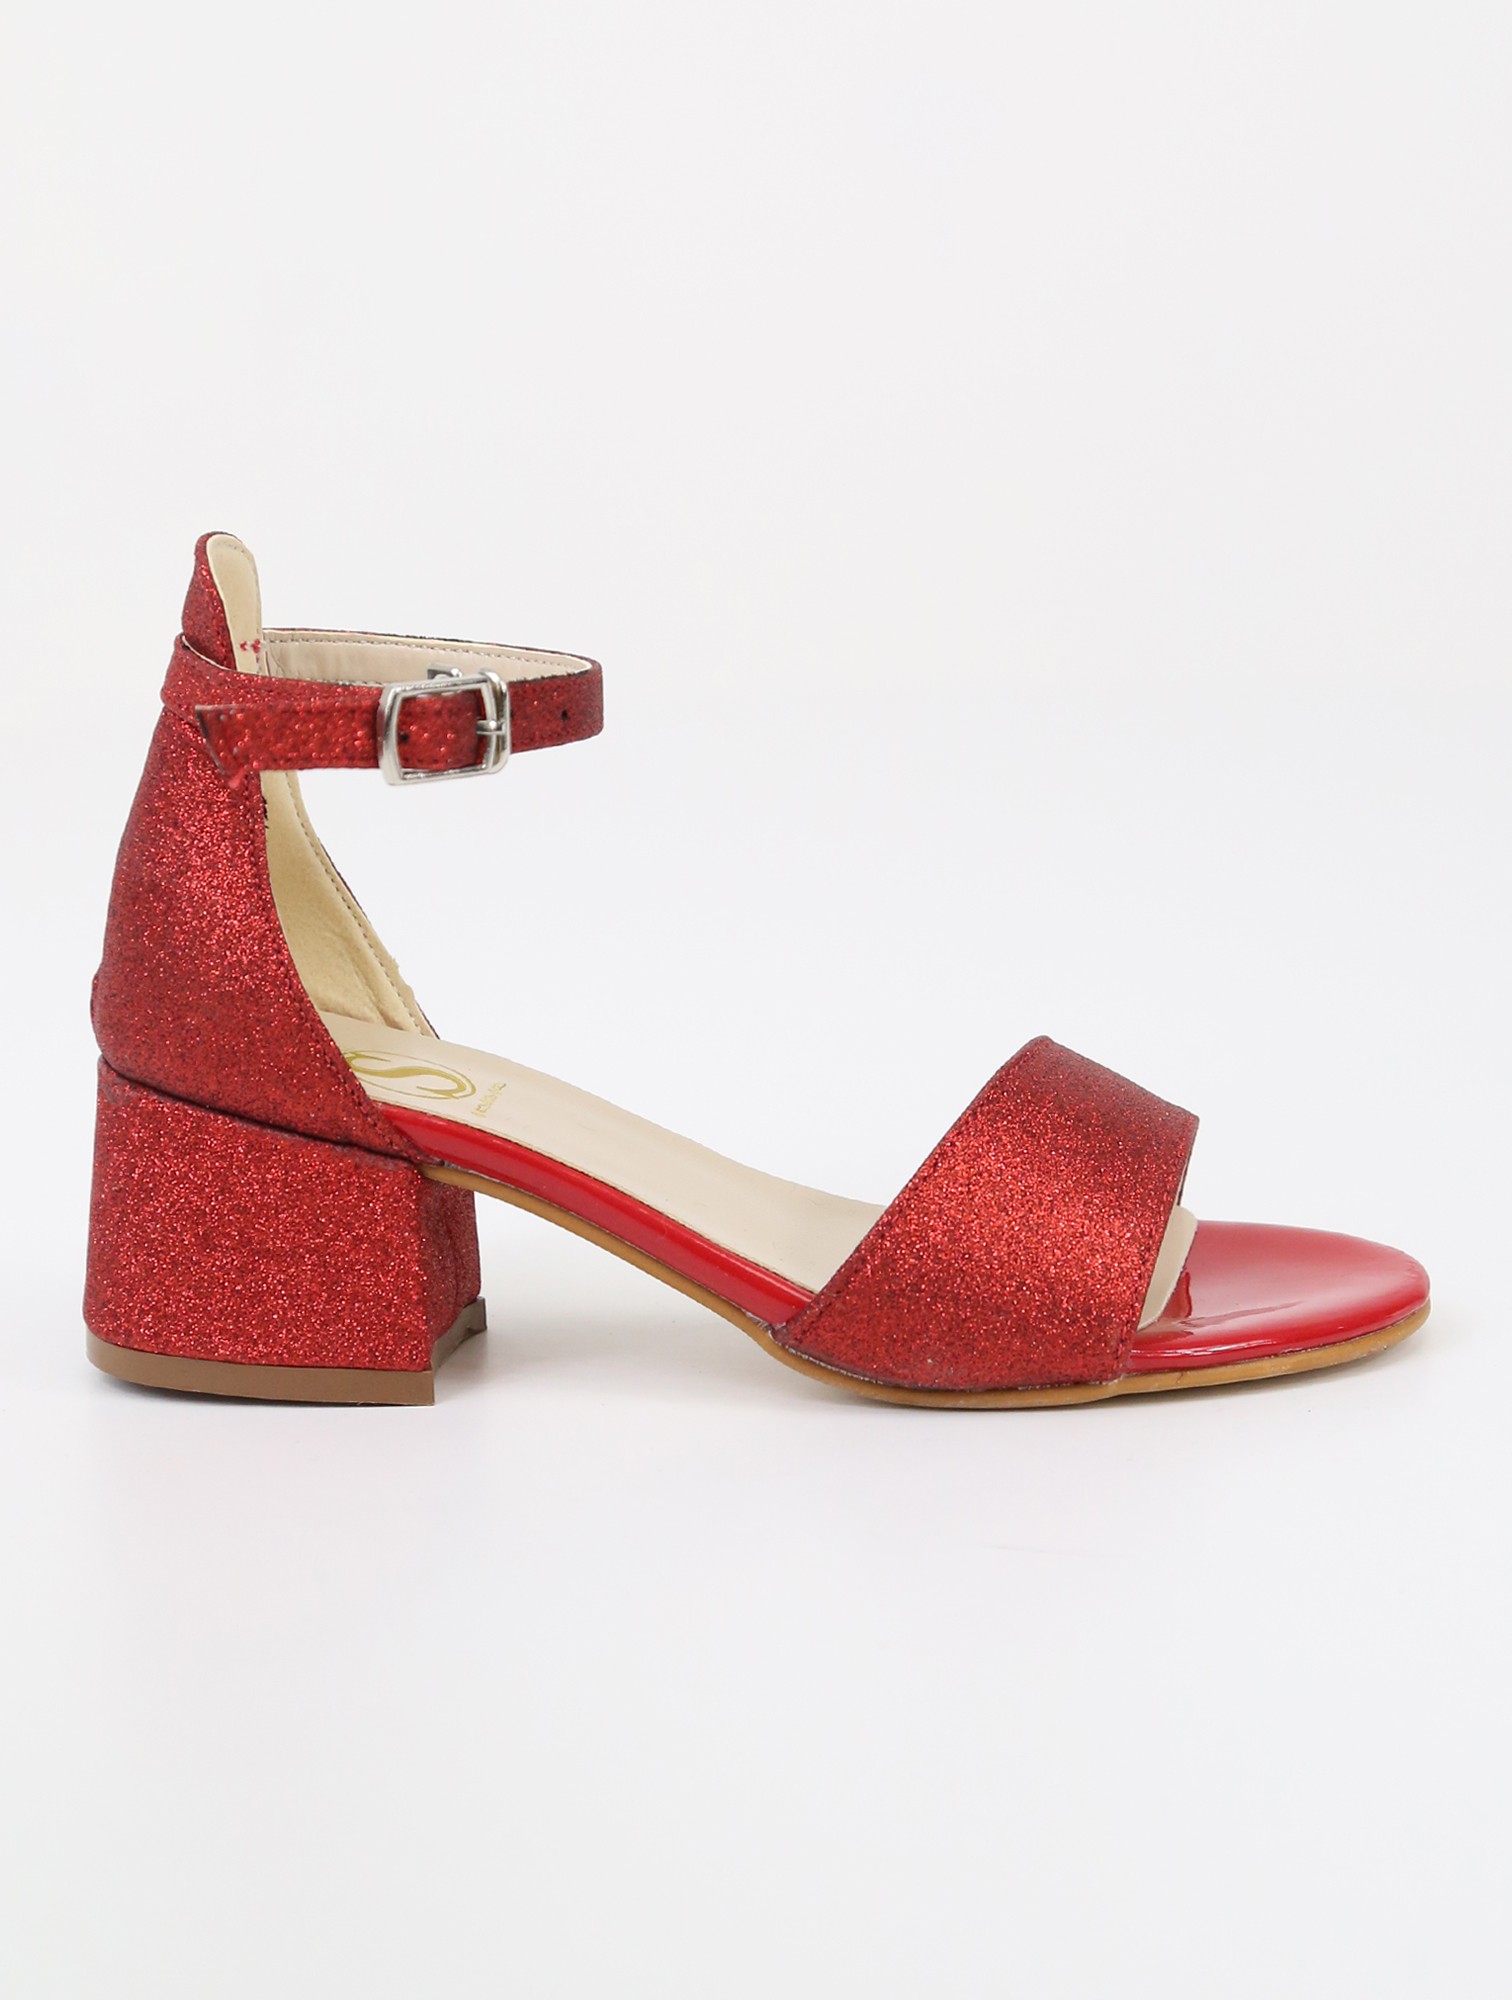 Kız Çocuk Simli Topuklu Sandalet - Hızlı Tak-Çıkar Kayışlı Abiye Ayakkabı - Kırmızı